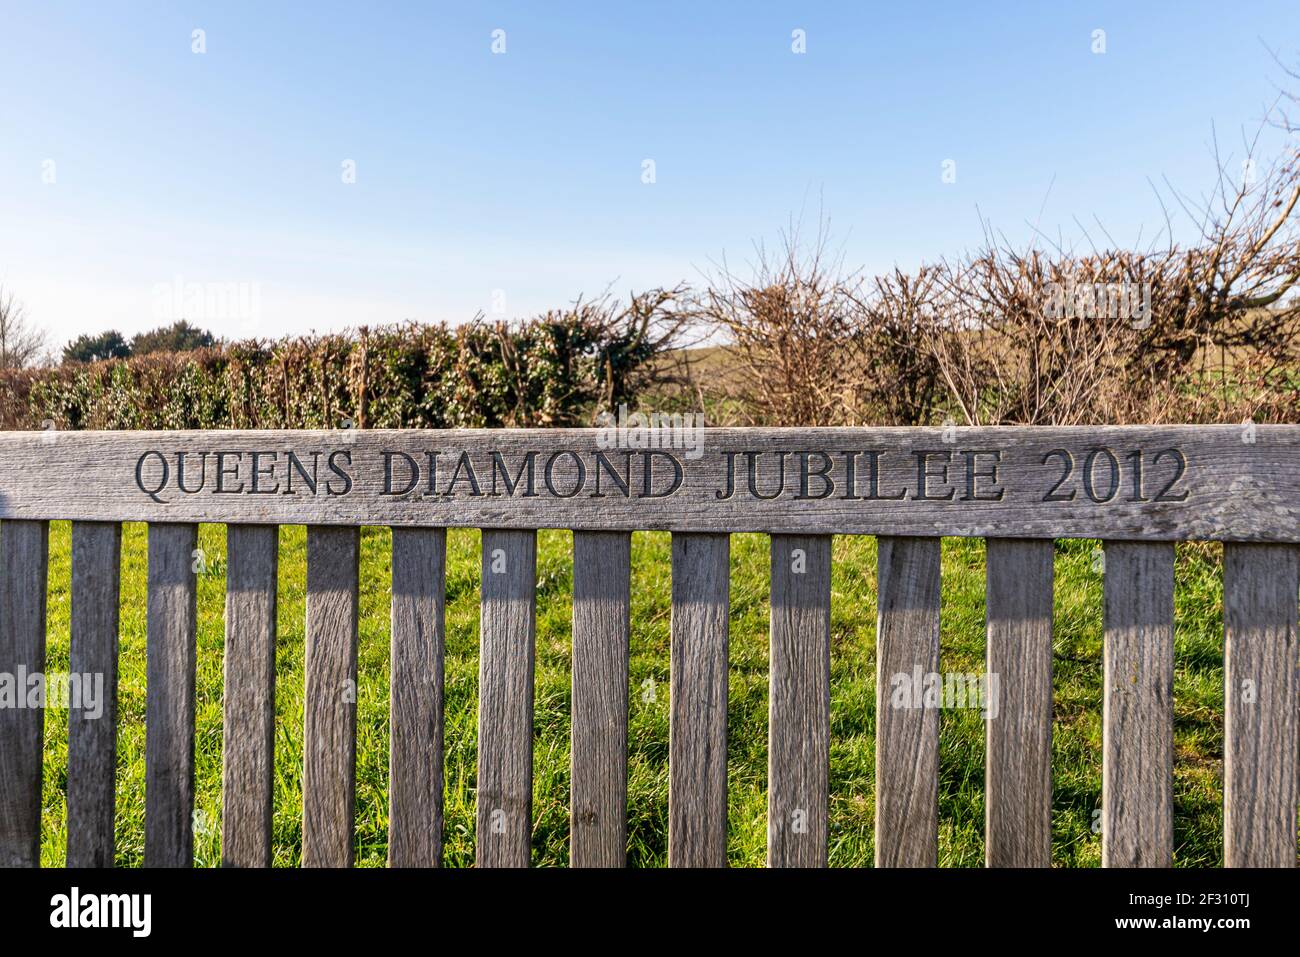 Queen's Diamond Jubilee 2012 banc en bois sculpté à Canewdon, Essex, Royaume-Uni. Village rural Banque D'Images